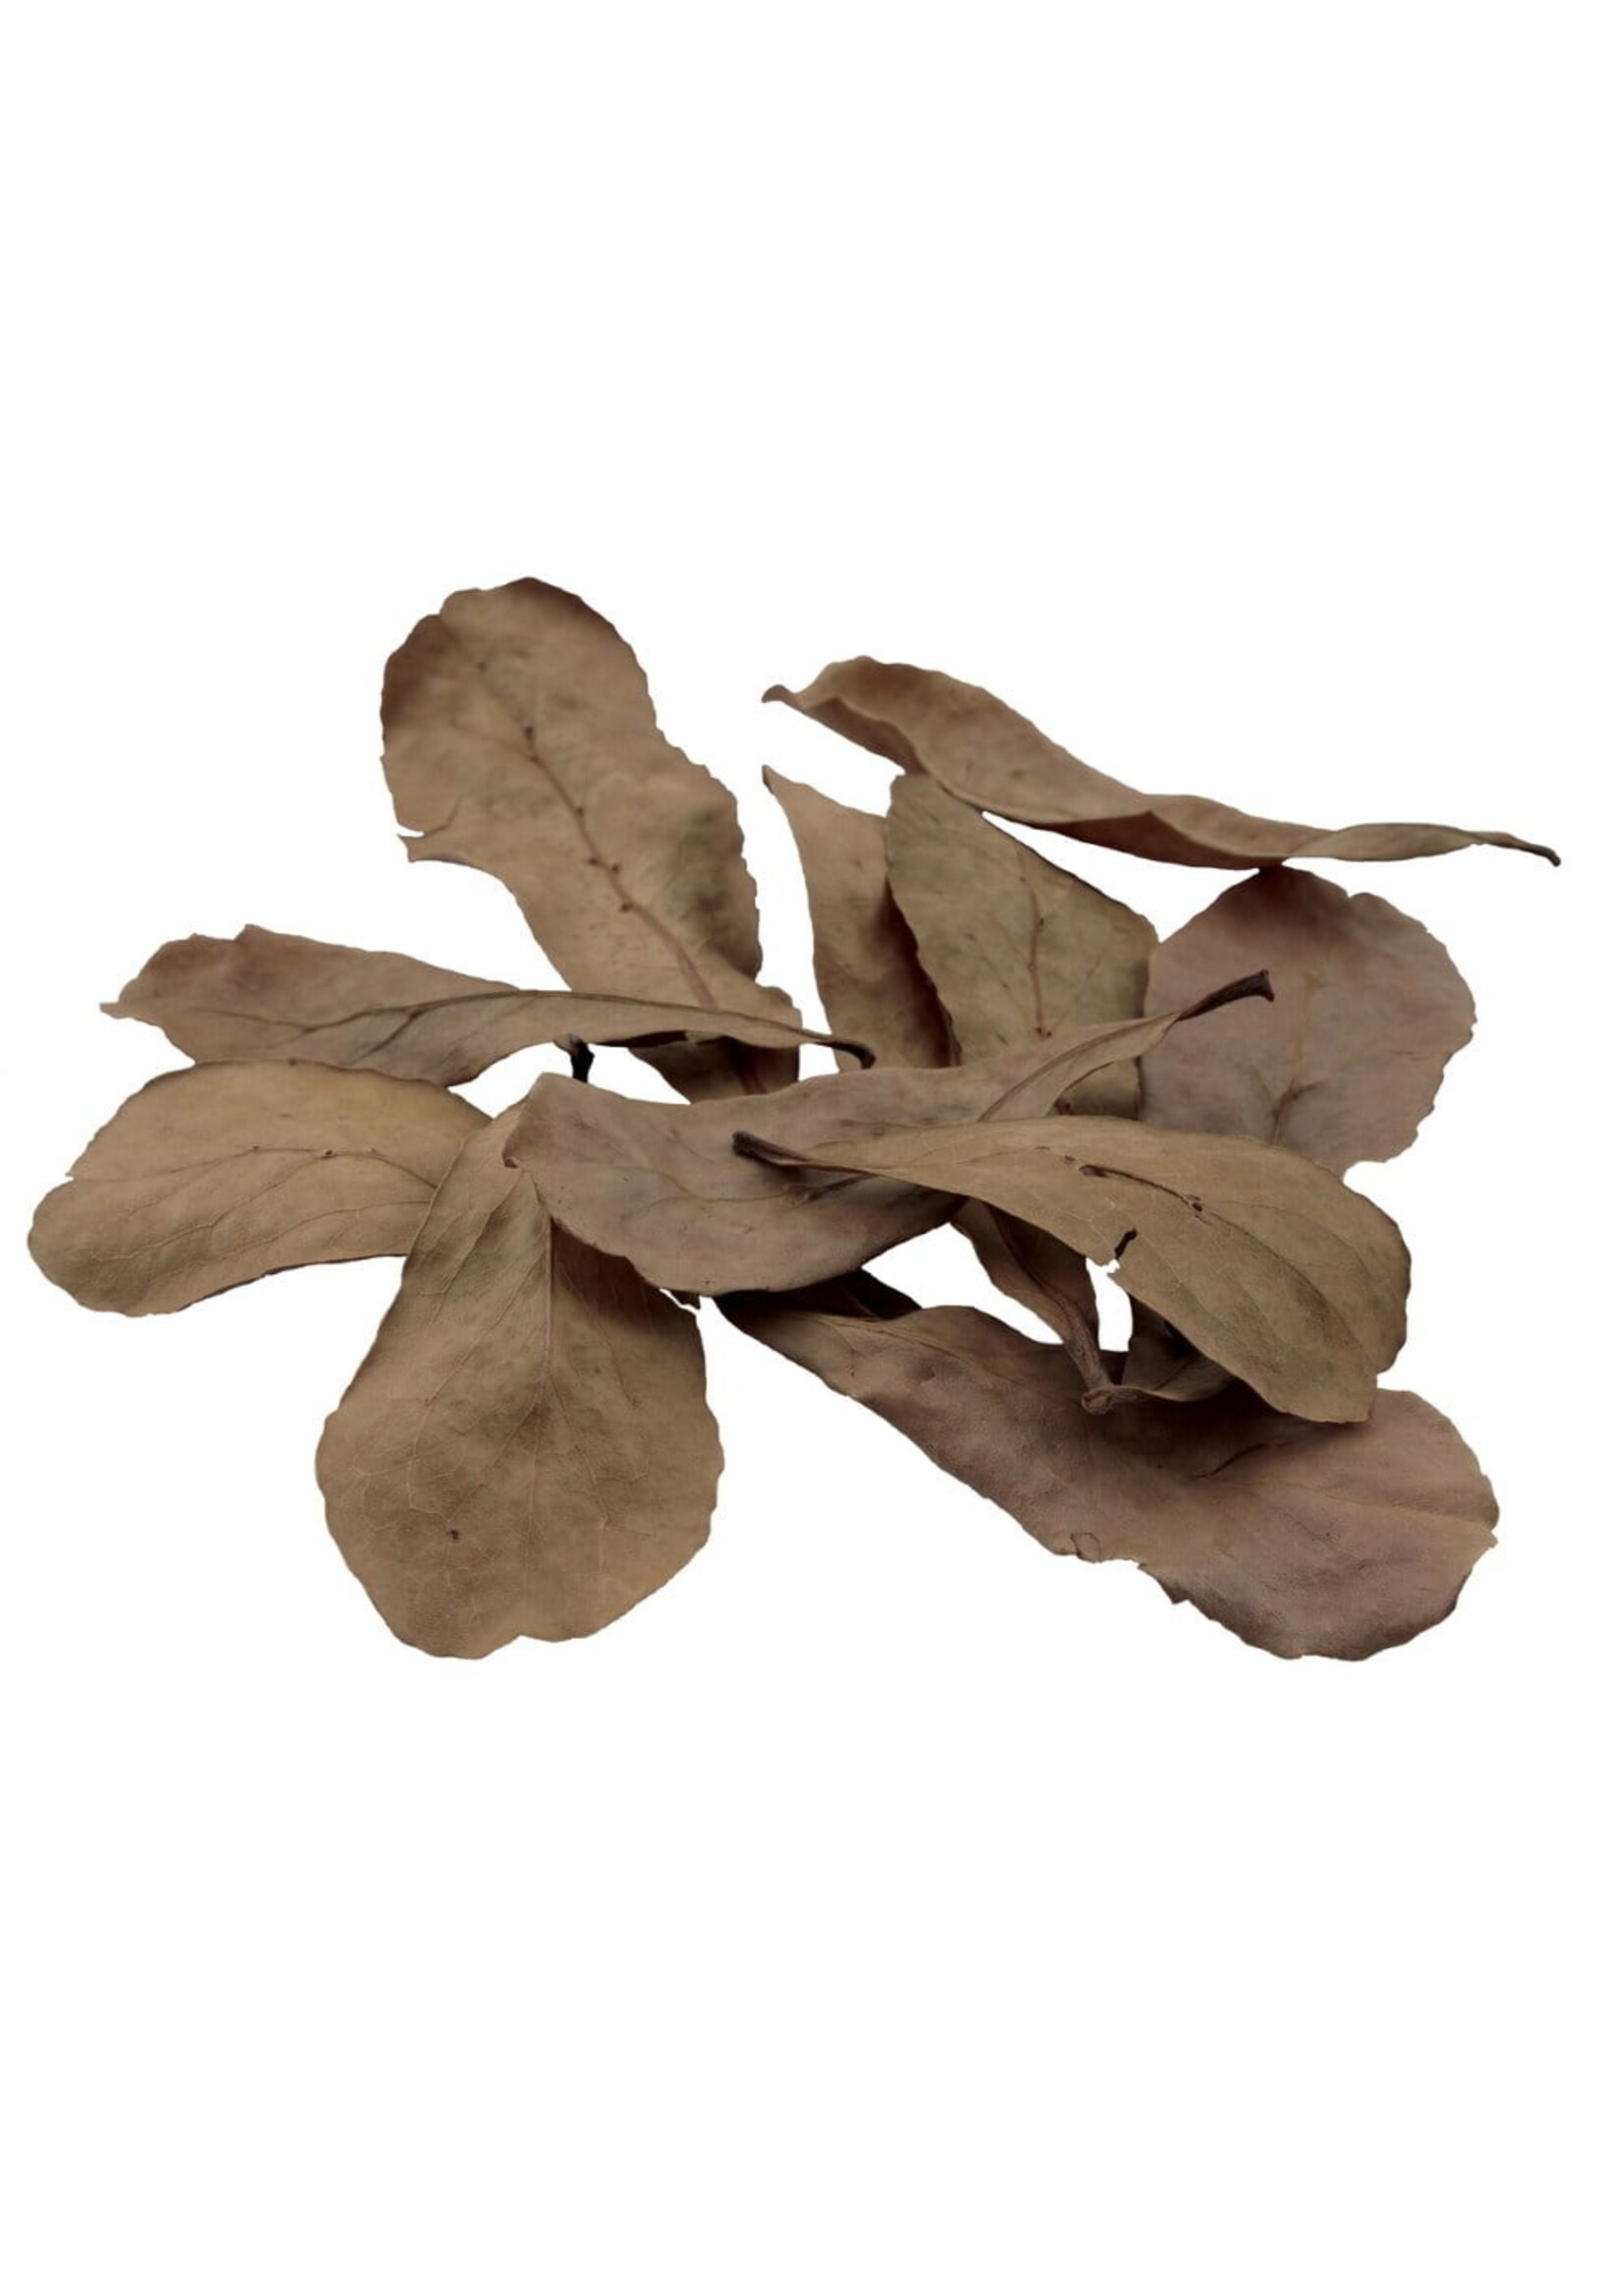 Fluval Fluval Betta Tropical Almond Leaves 10pack